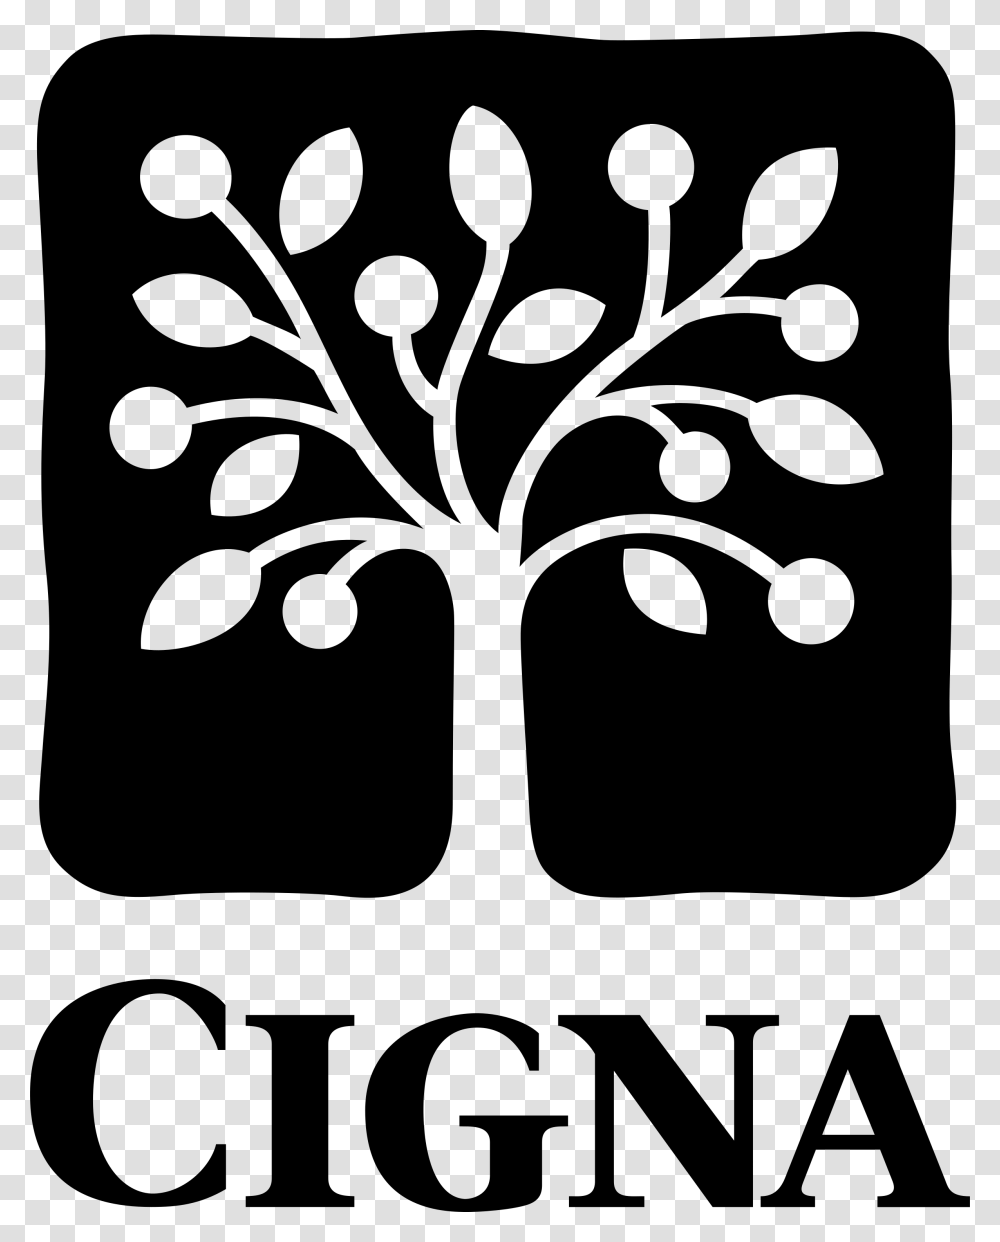 Cigna 1 Logo Cigna Dental, Gray, World Of Warcraft Transparent Png